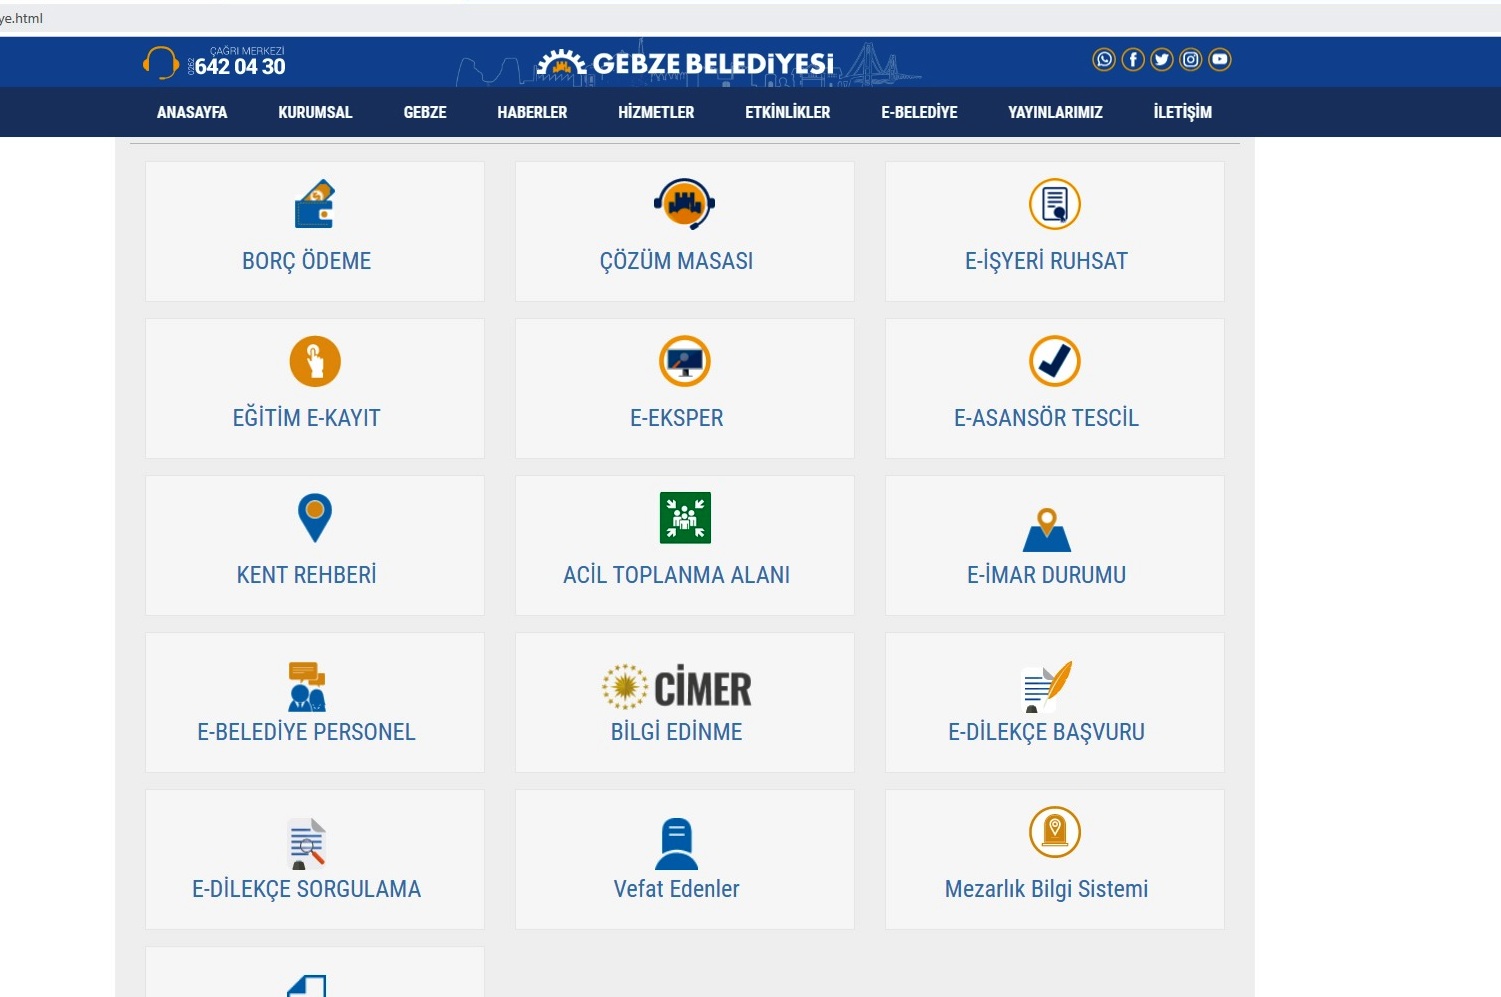  Gebze’de Online Belediyecilik Çığır Açıyor